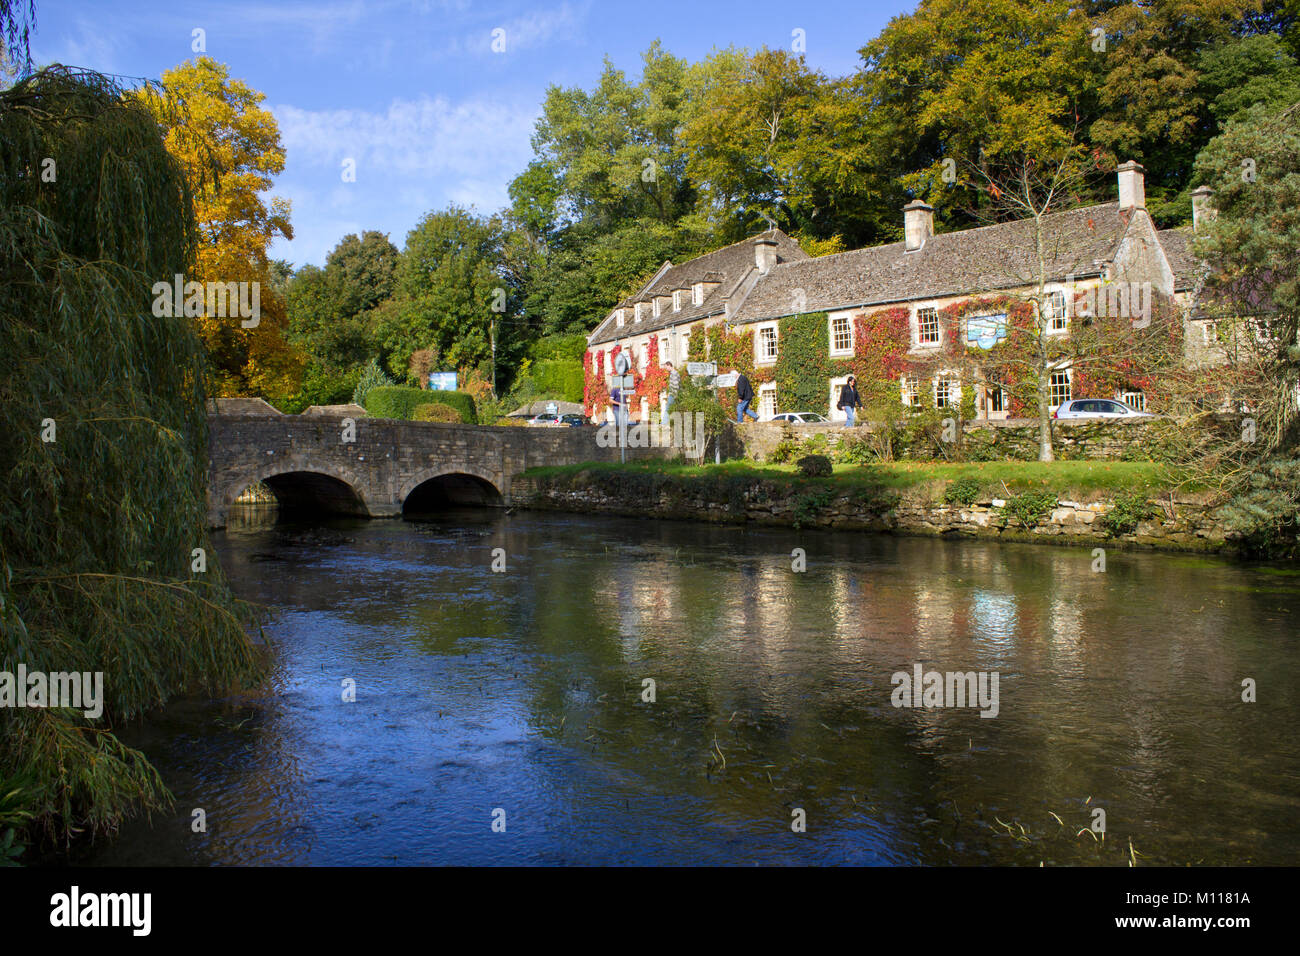 Bibury, Gloucestershire, Großbritannien - 7.. Oktober 2010: Klassische Frühherbstansicht der alten Brücke über den Fluss Coln in Bibury. Bibury wurde einst von William Morris (1834-96) als "das schönste Dorf in England" beschrieben. Stockfoto